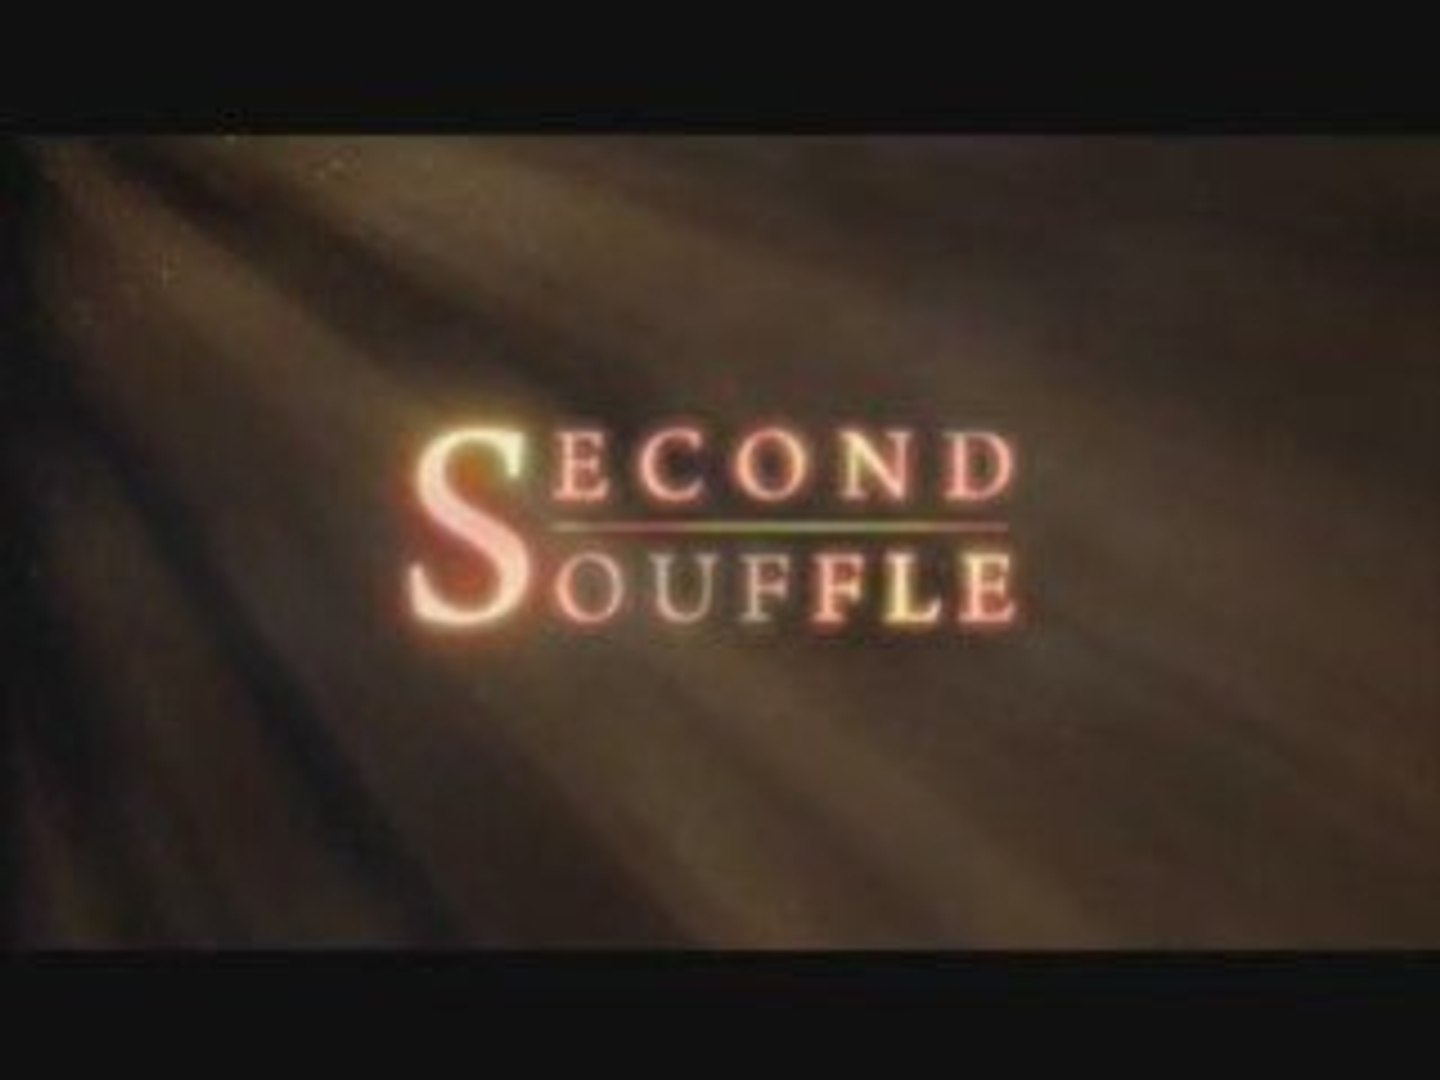 Le film d'animation Second Souffle